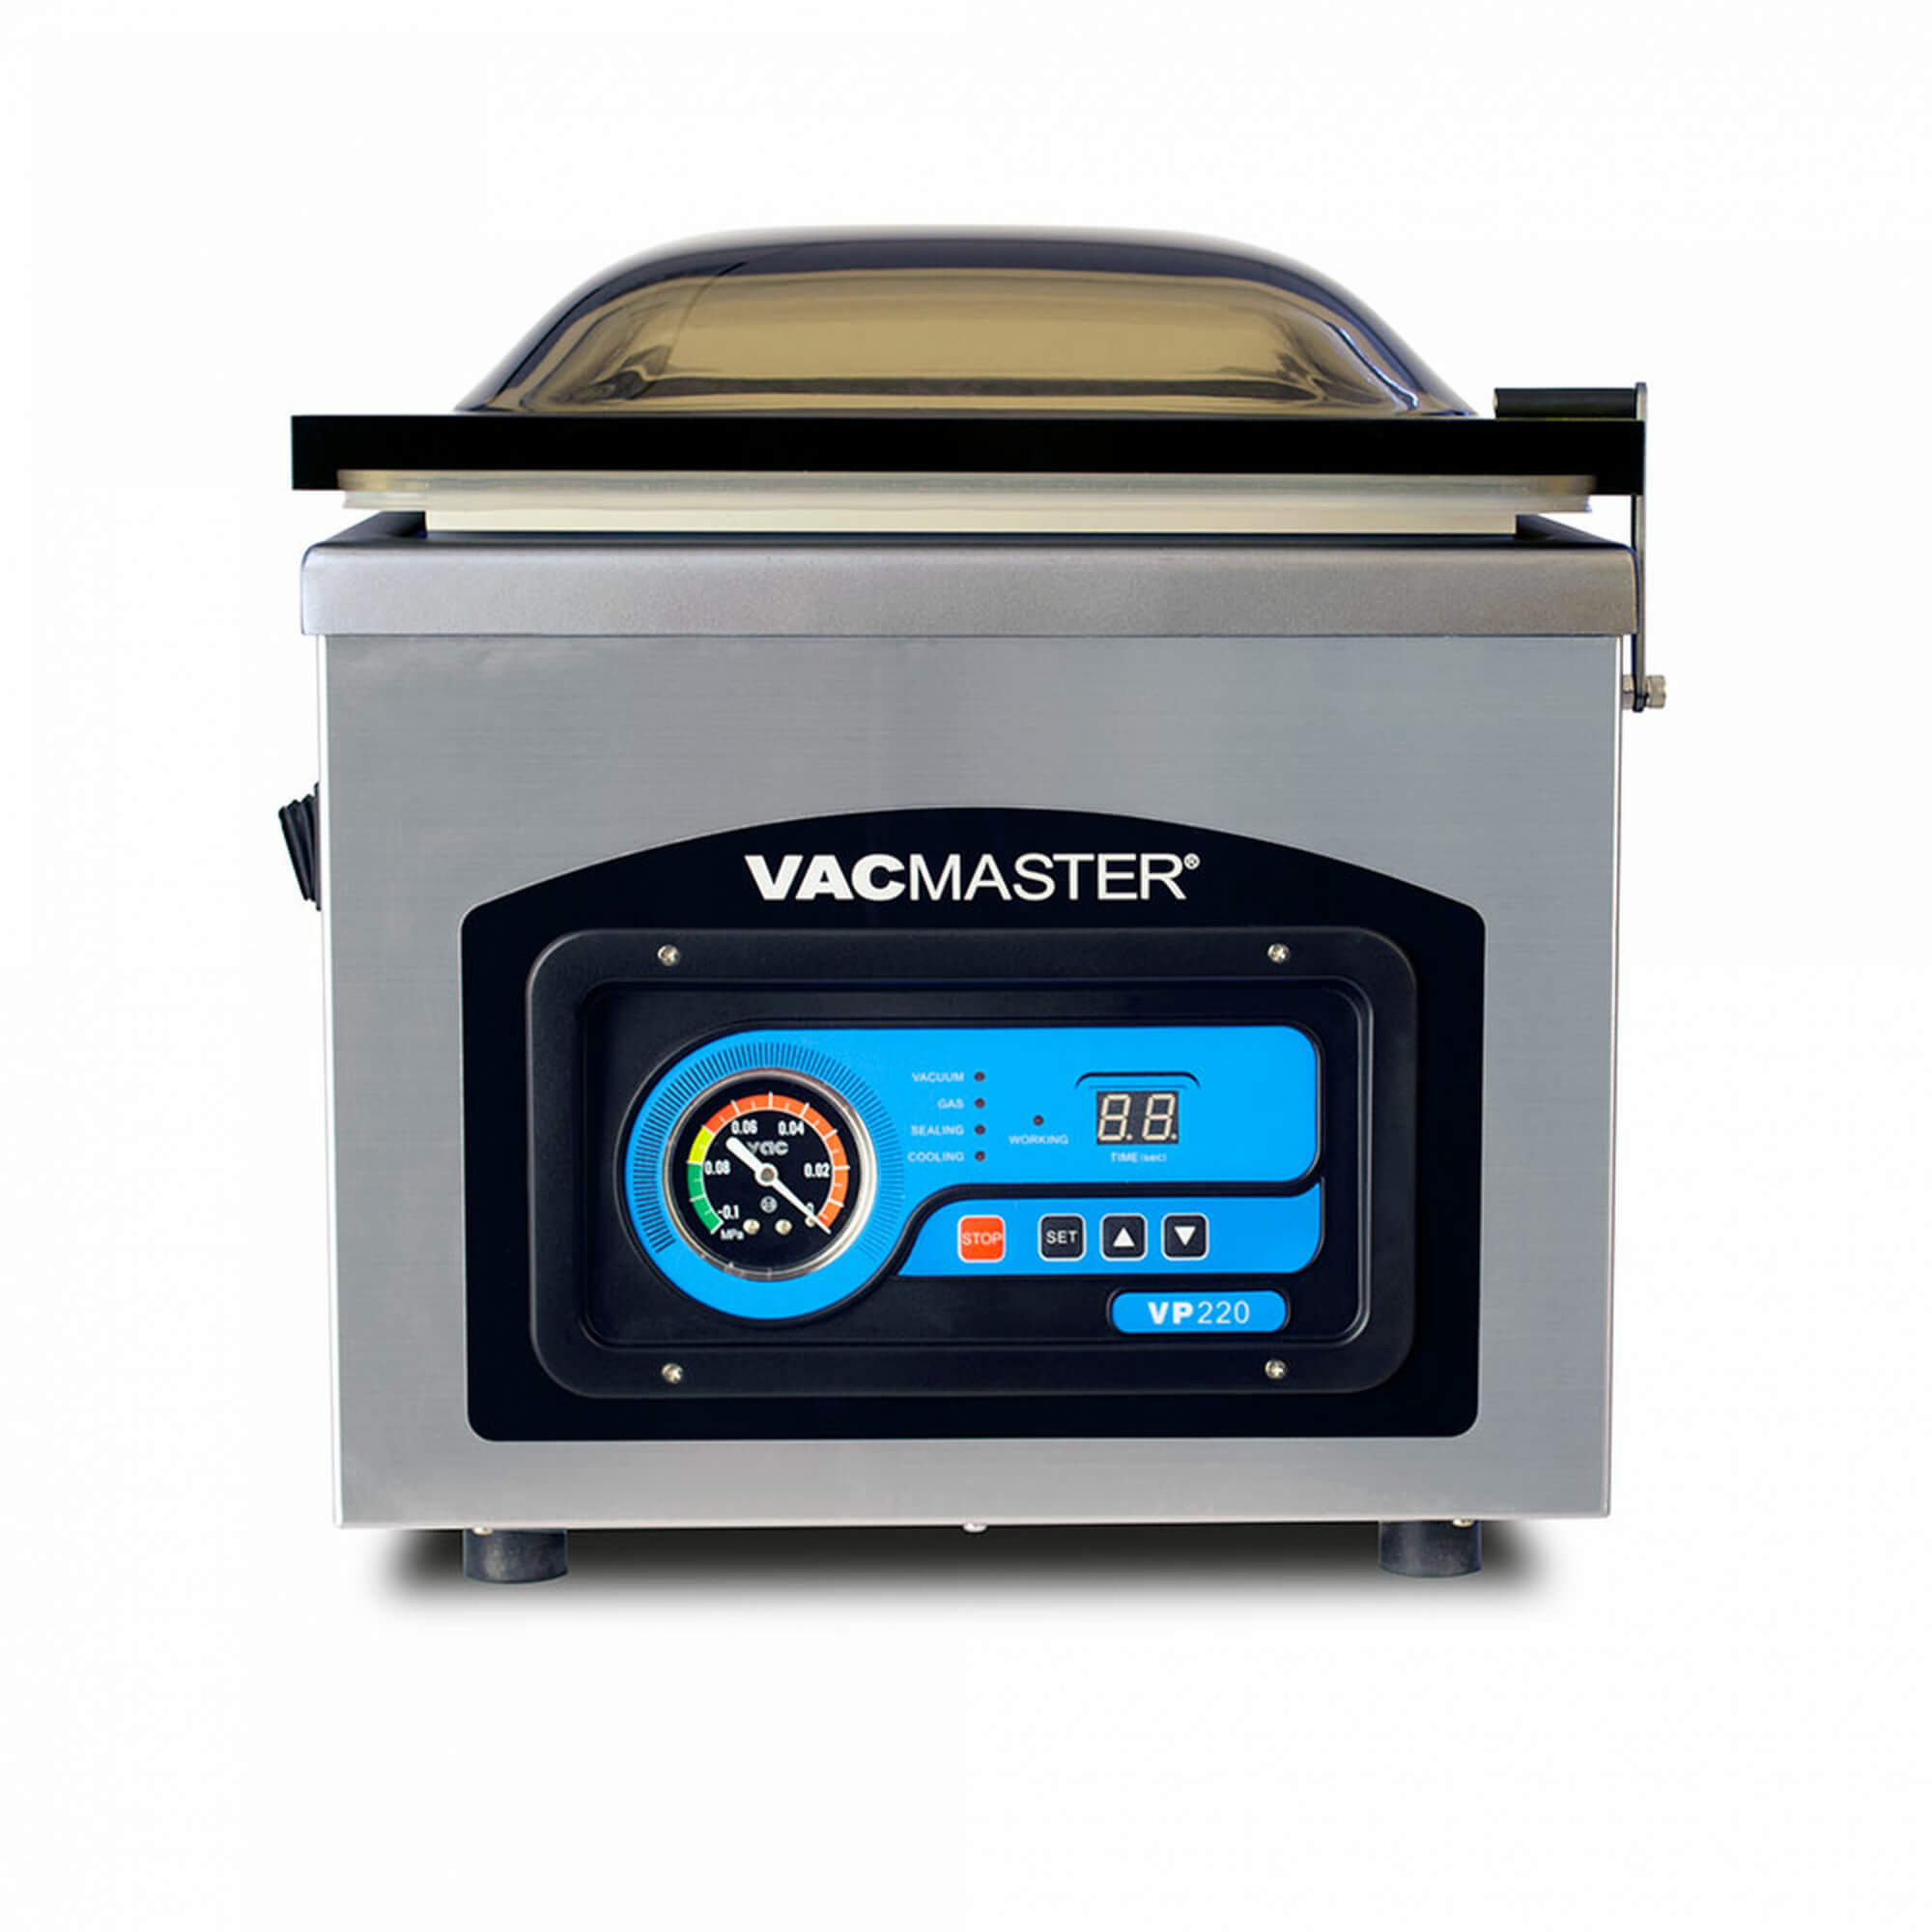 Vacmaster 948200 6 x 10 Full Mesh Vacuum Seal Pint Bags - 50 Pack